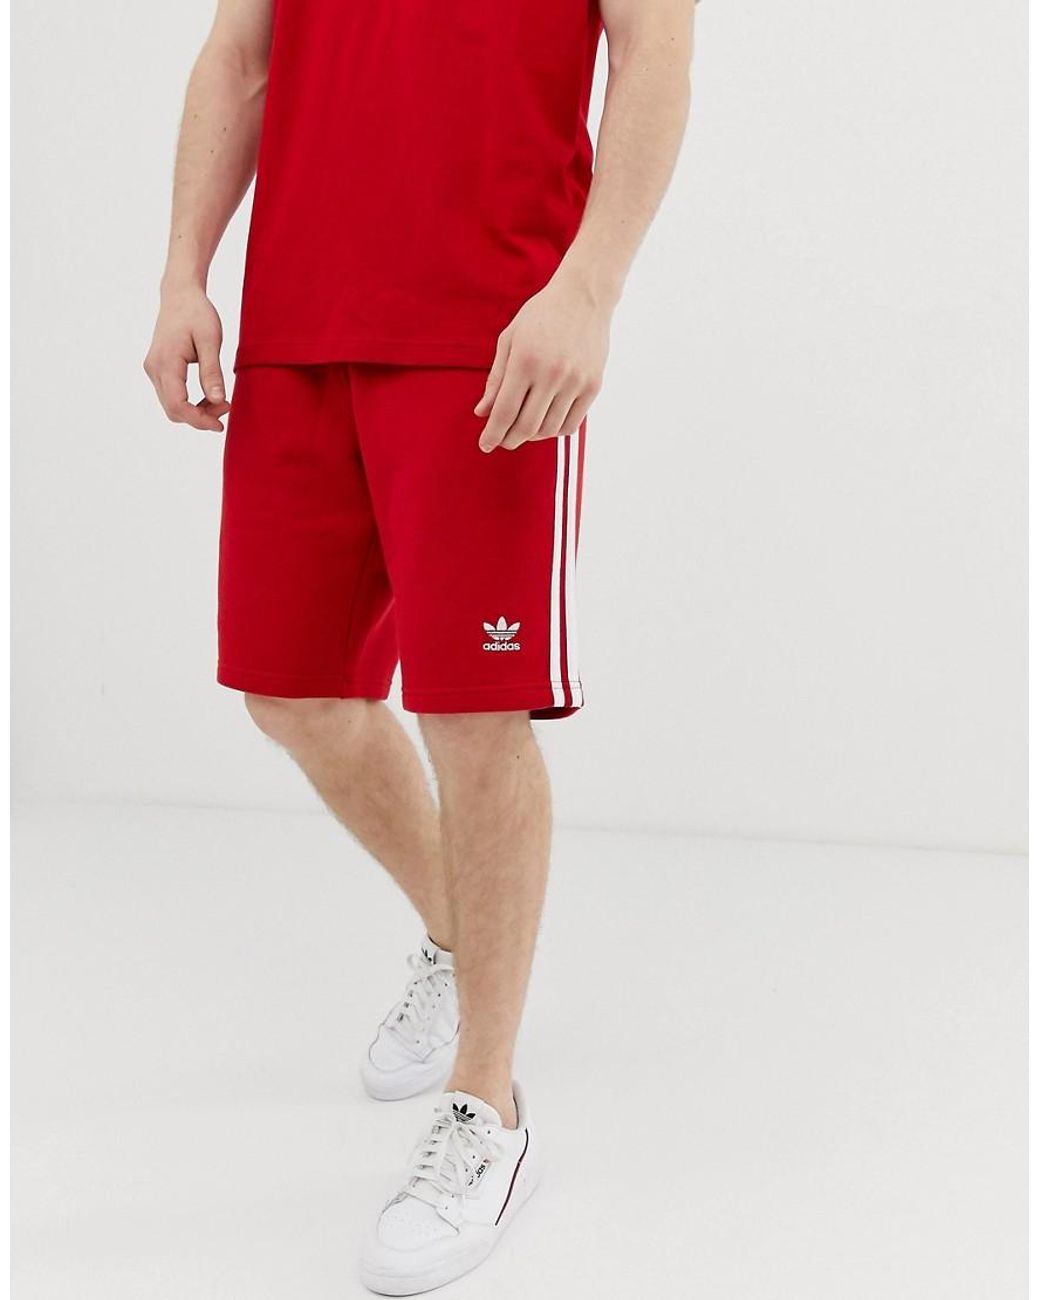 daarna Perforeren eigendom adidas Originals 3 Stripe Shorts Dv1525 Red for Men | Lyst